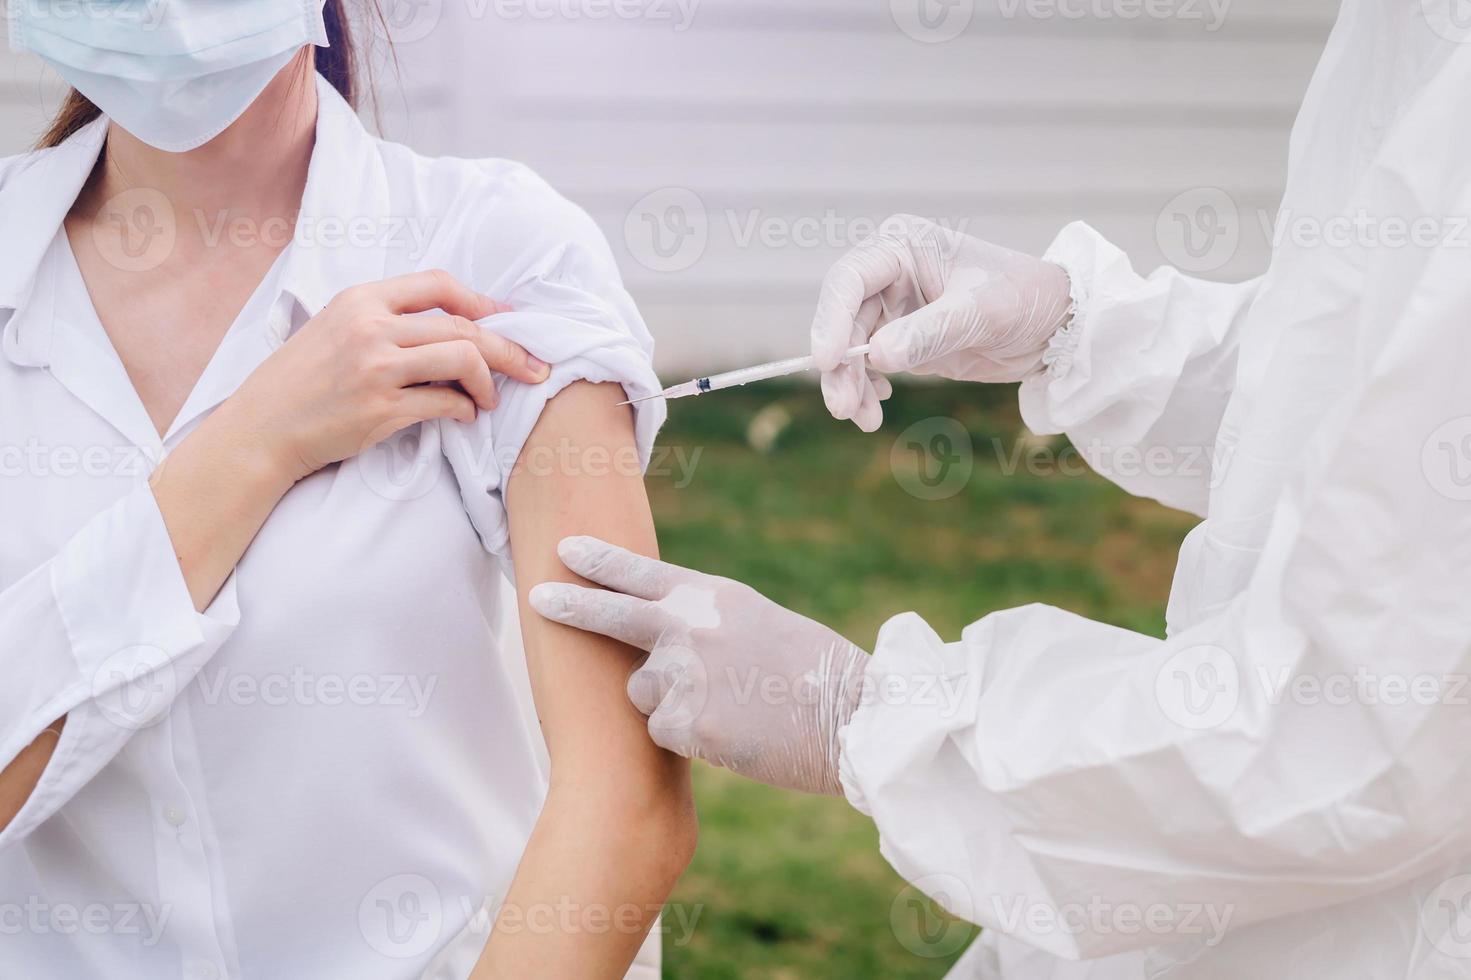 arzt, der die spritze hält, bevor er dem patienten in einer medizinischen maske injiziert. covid-19 oder coronavirus-impfstoff foto